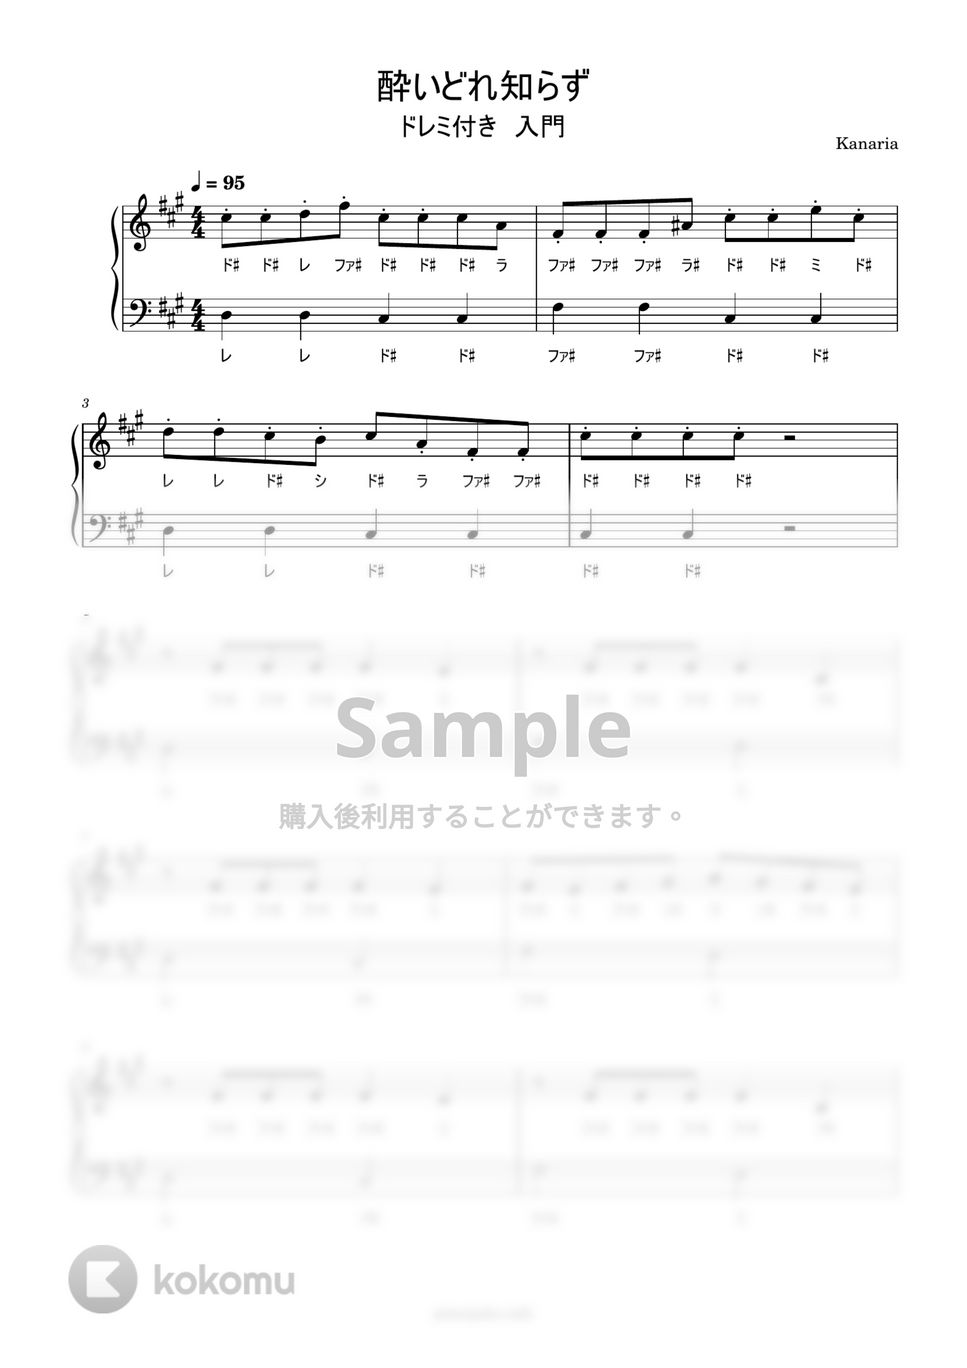 Kanaria - 酔いどれ知らず (ドレミ付き/簡単楽譜) by ピアノ塾